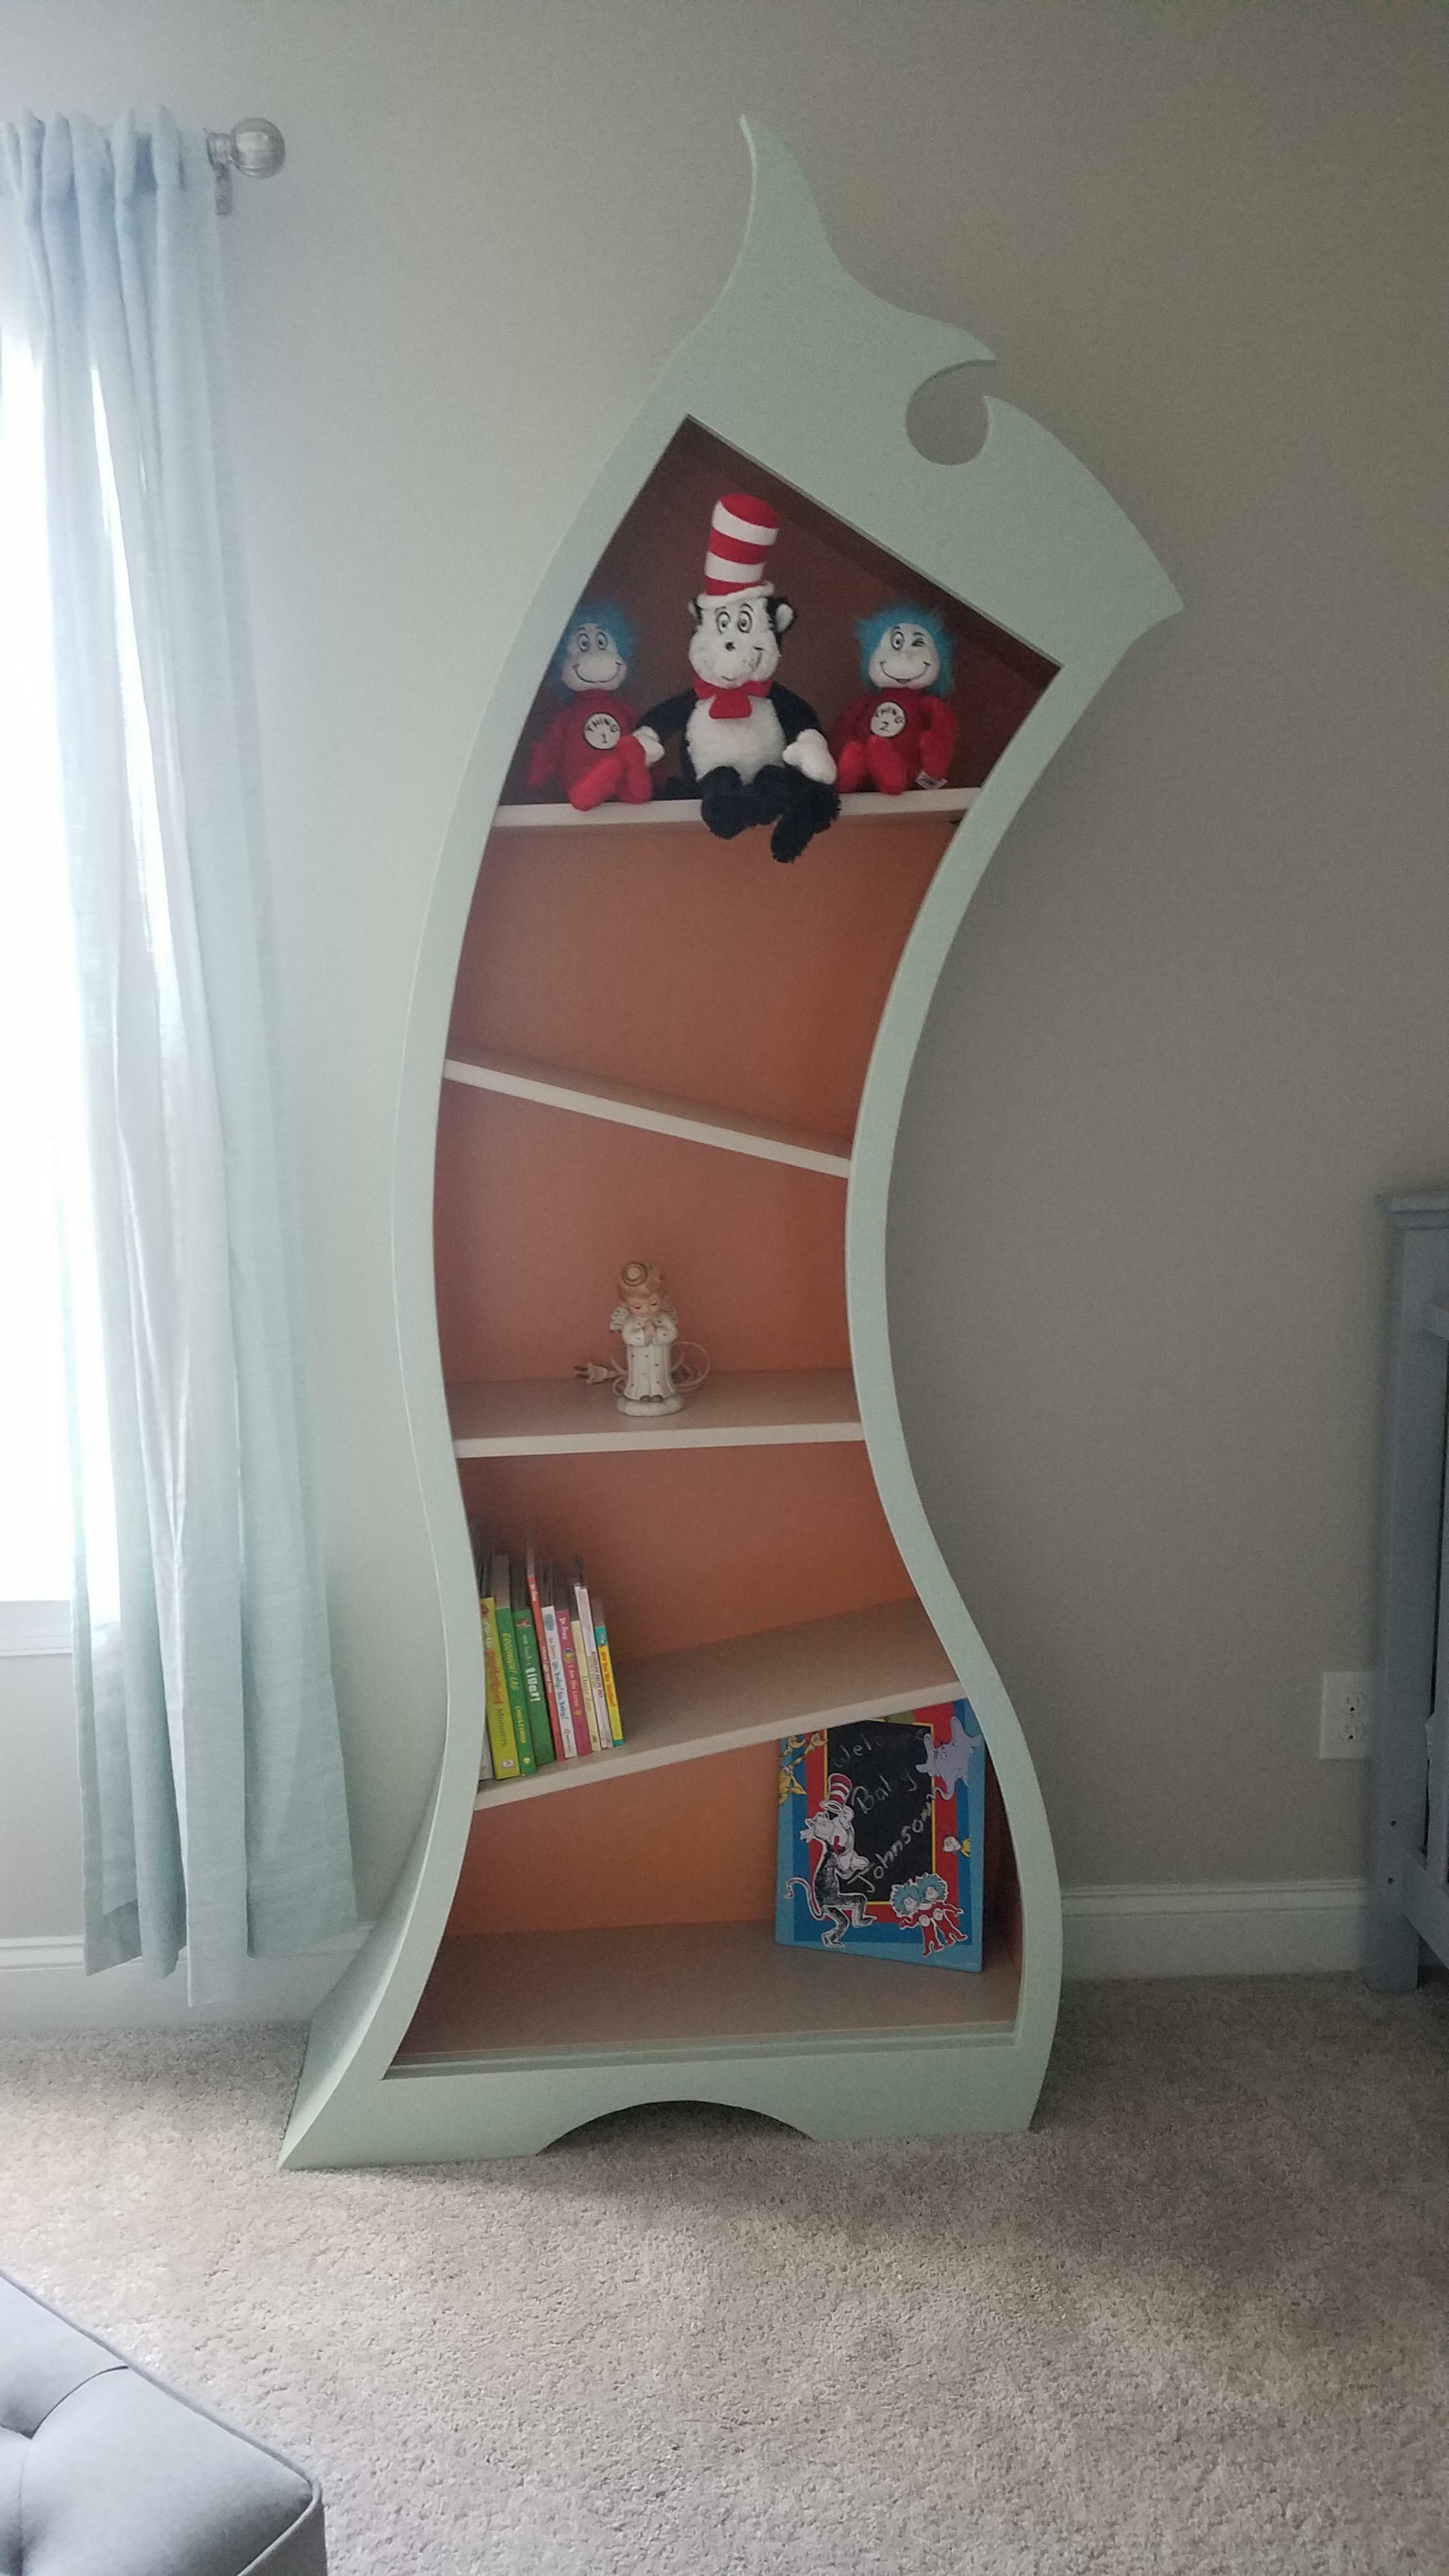 Ma femme voulait une chambre d'enfant sur le thème de Dr. Seuss, alors j'ai construit une bibliothèque sur ce thème.